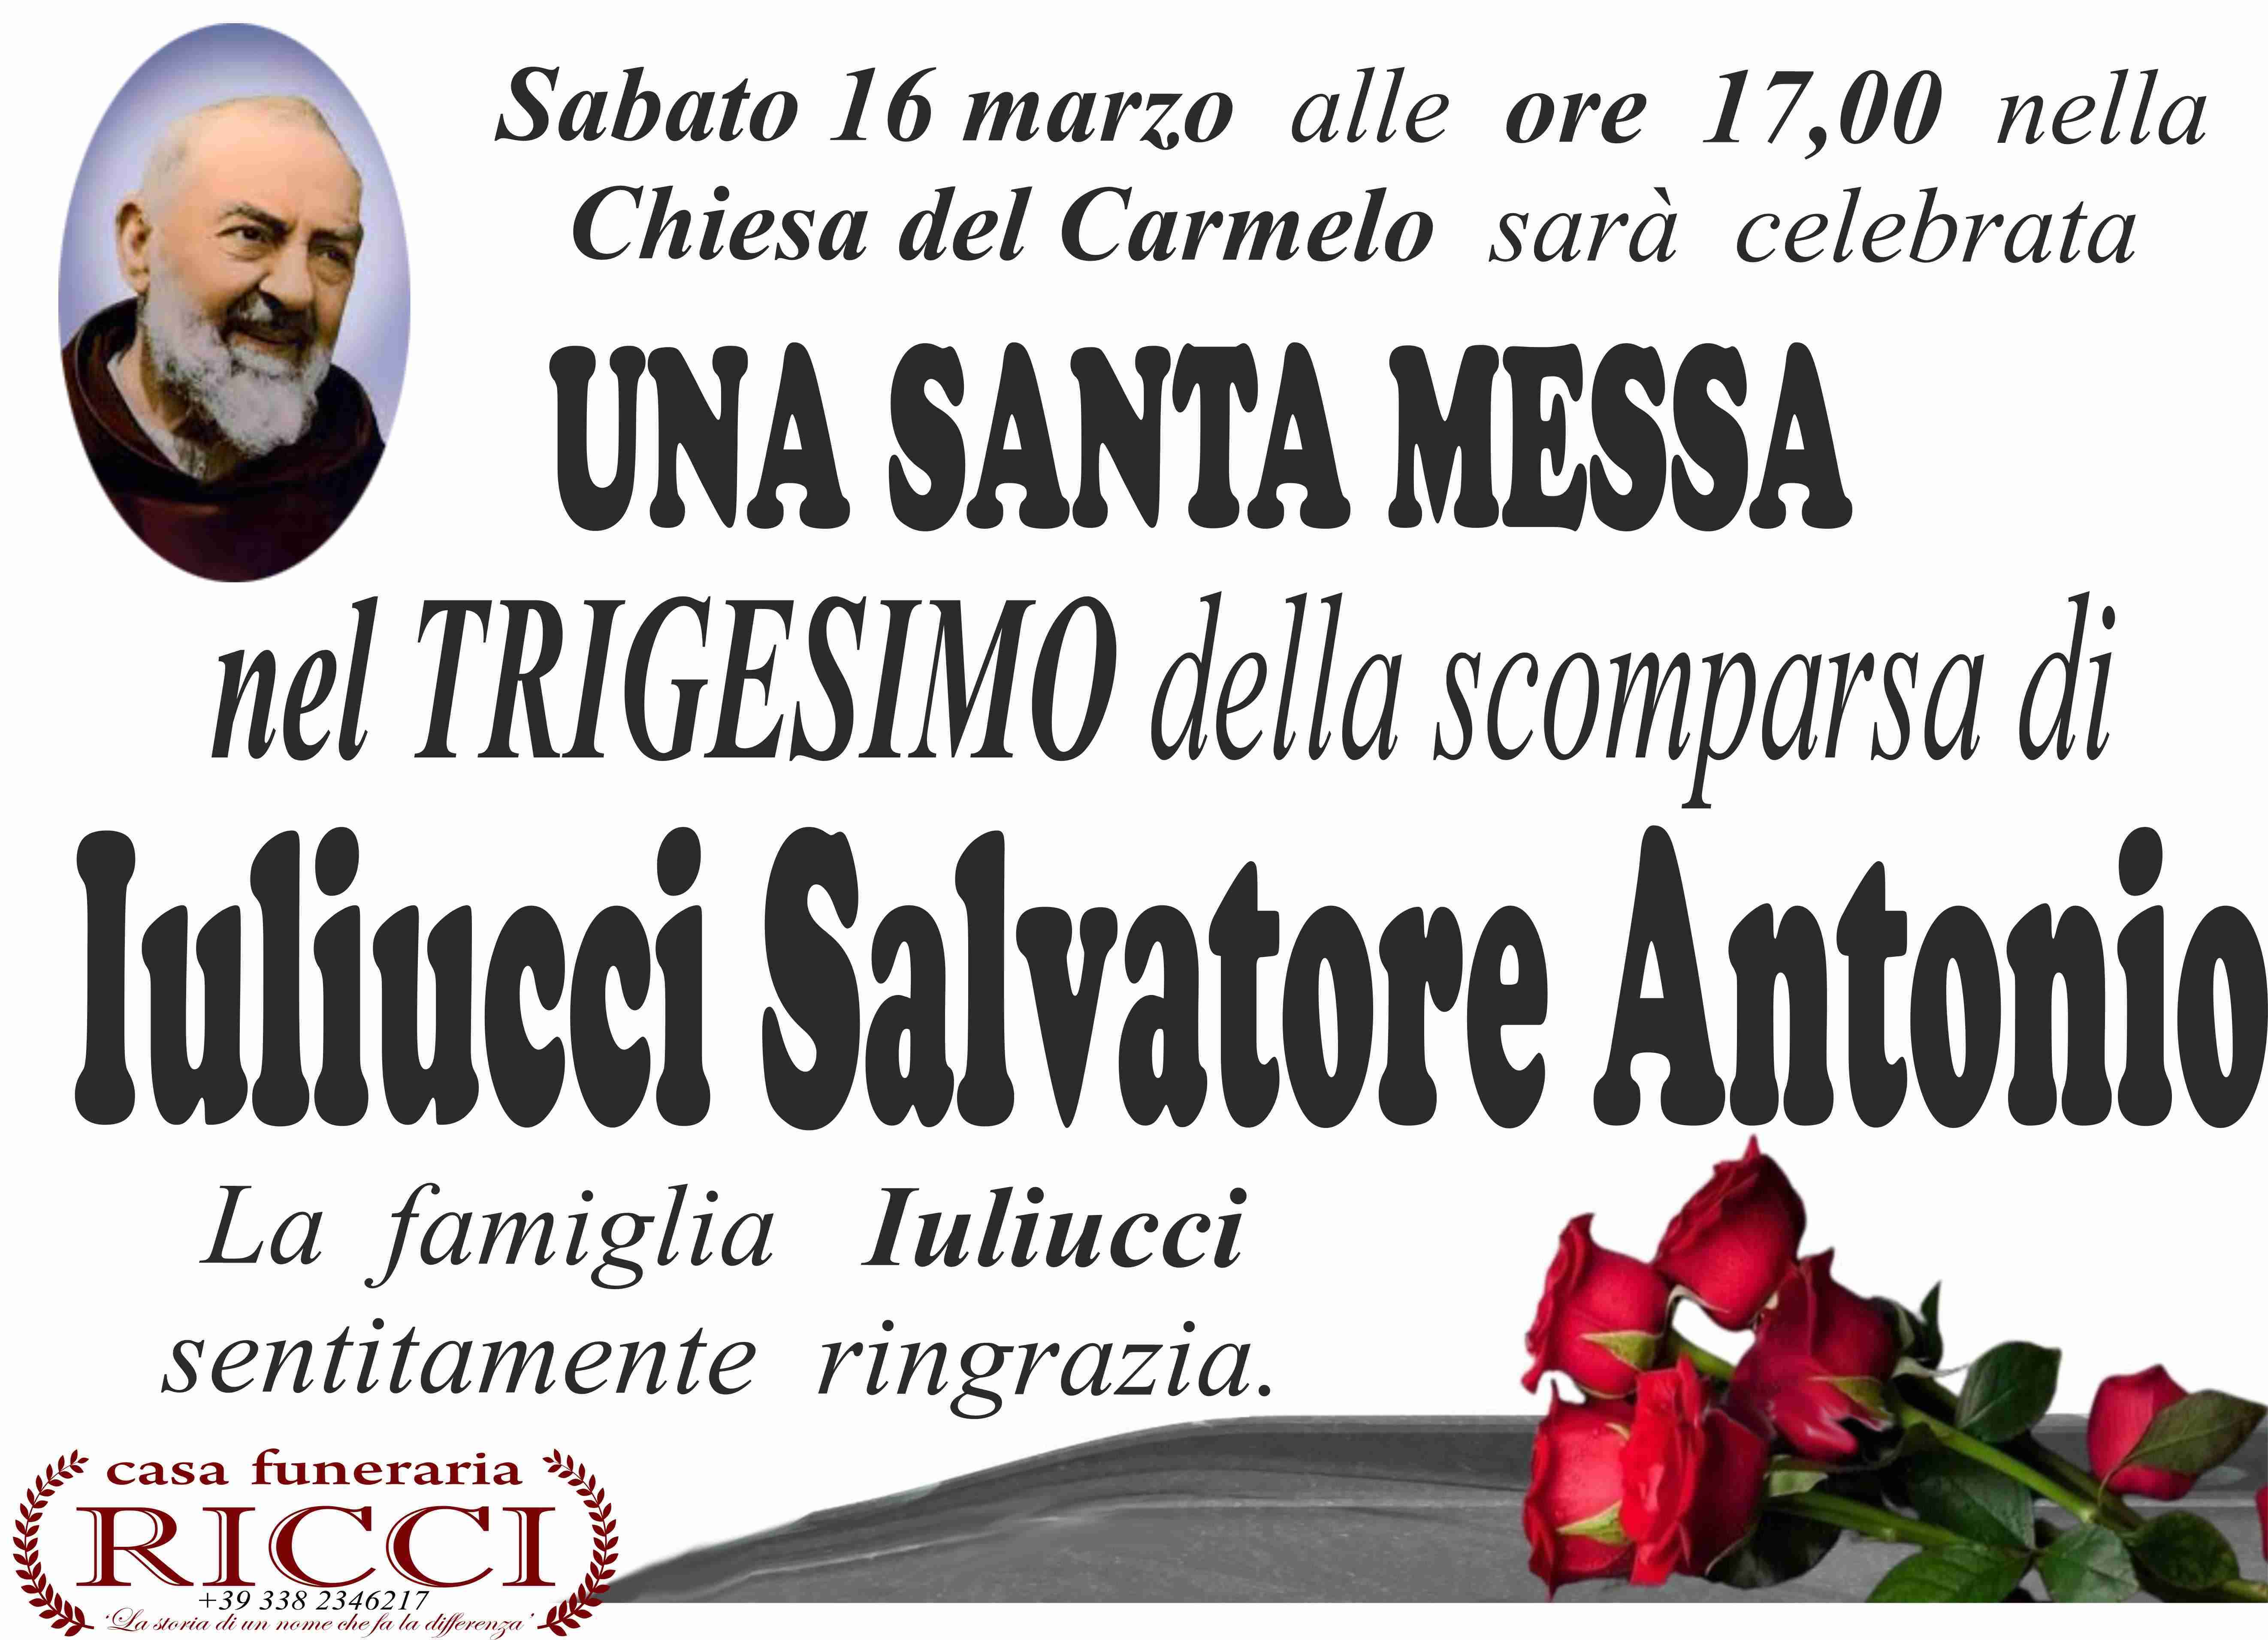 Antonio Salvatore Iuliucci